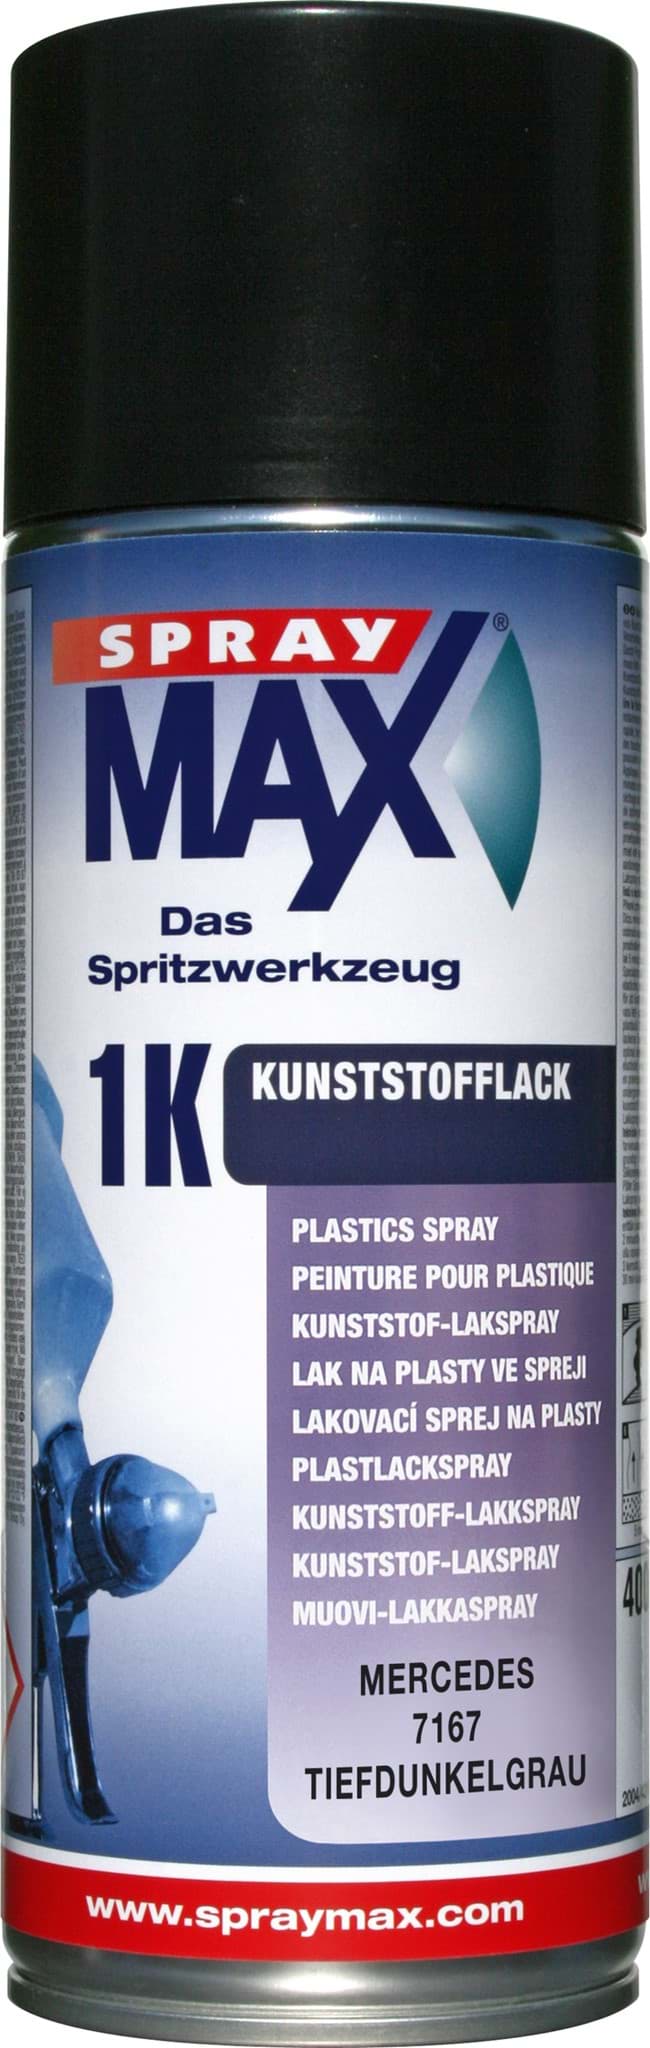 Picture of SprayMax 1K Kunststofflack Mercedes 7167 tiefdunkelgrau